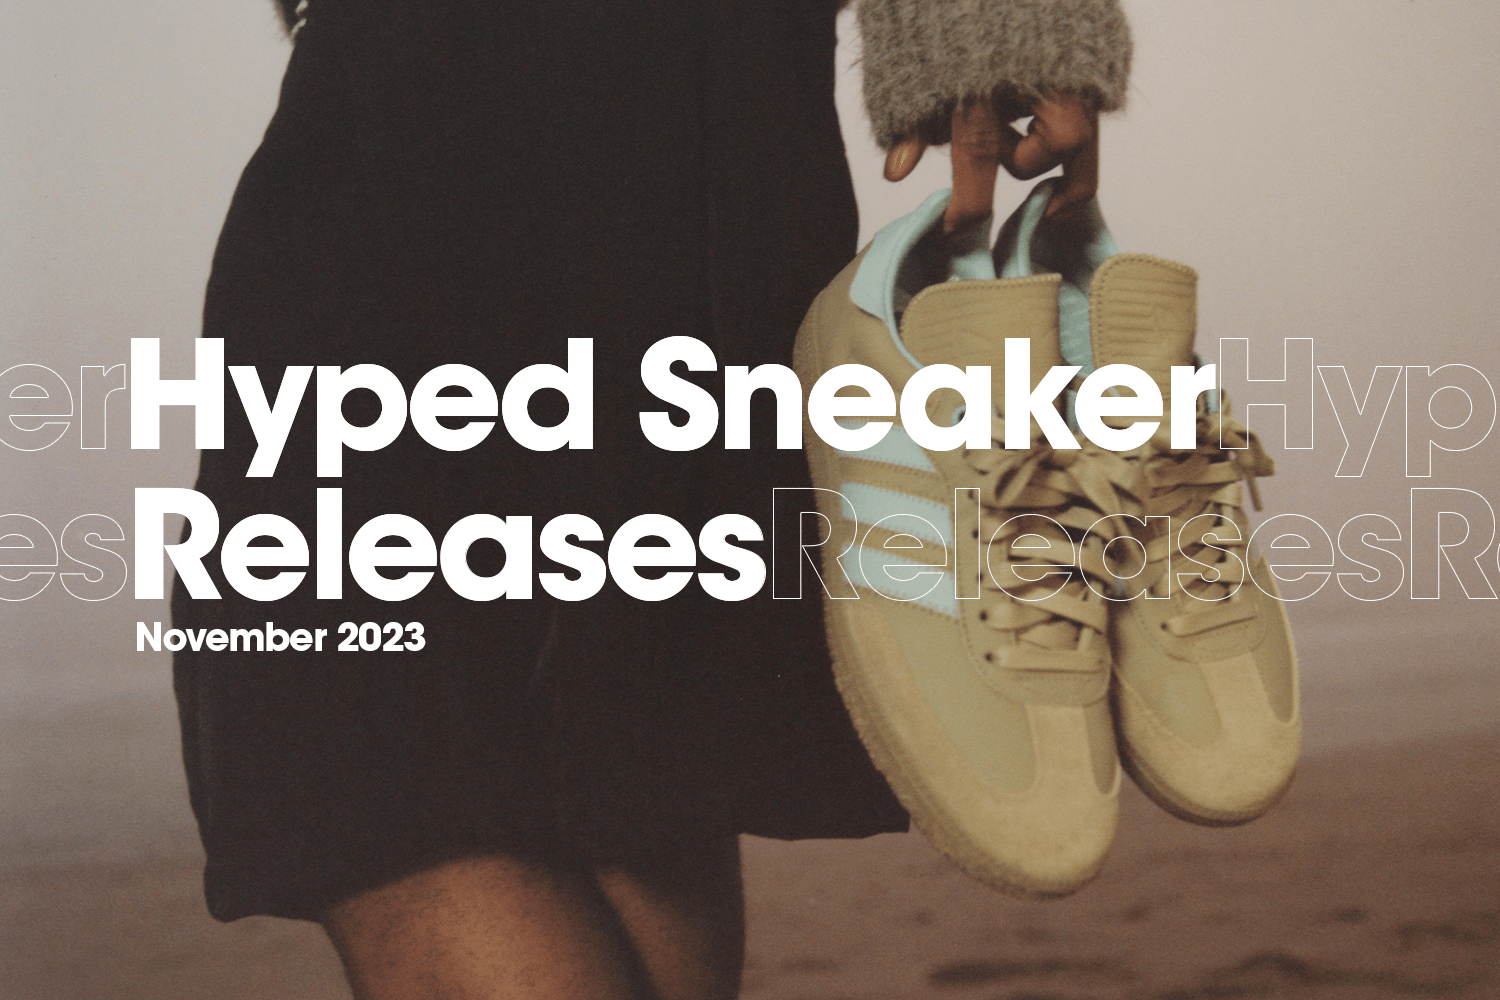 Hyped Sneaker Releases van november 2023